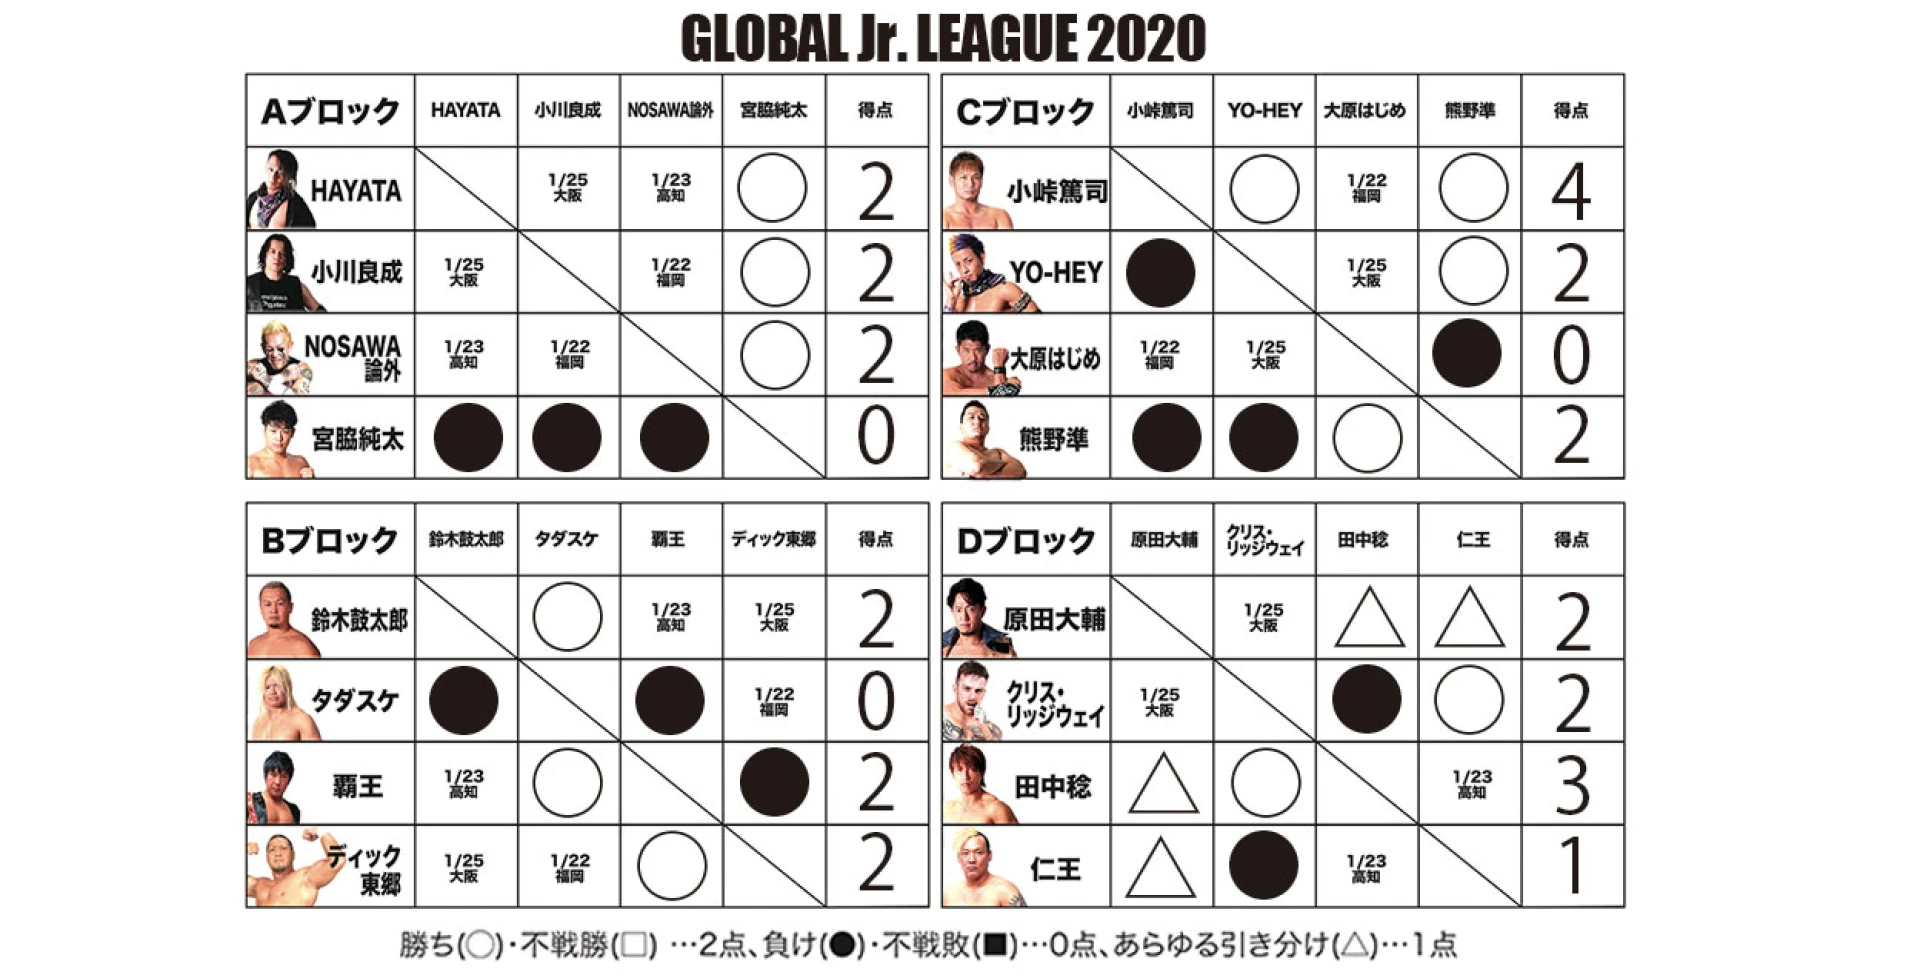 【1･21福岡終了時点】GLOBAL Jr. LEAGUE 2020 得点表